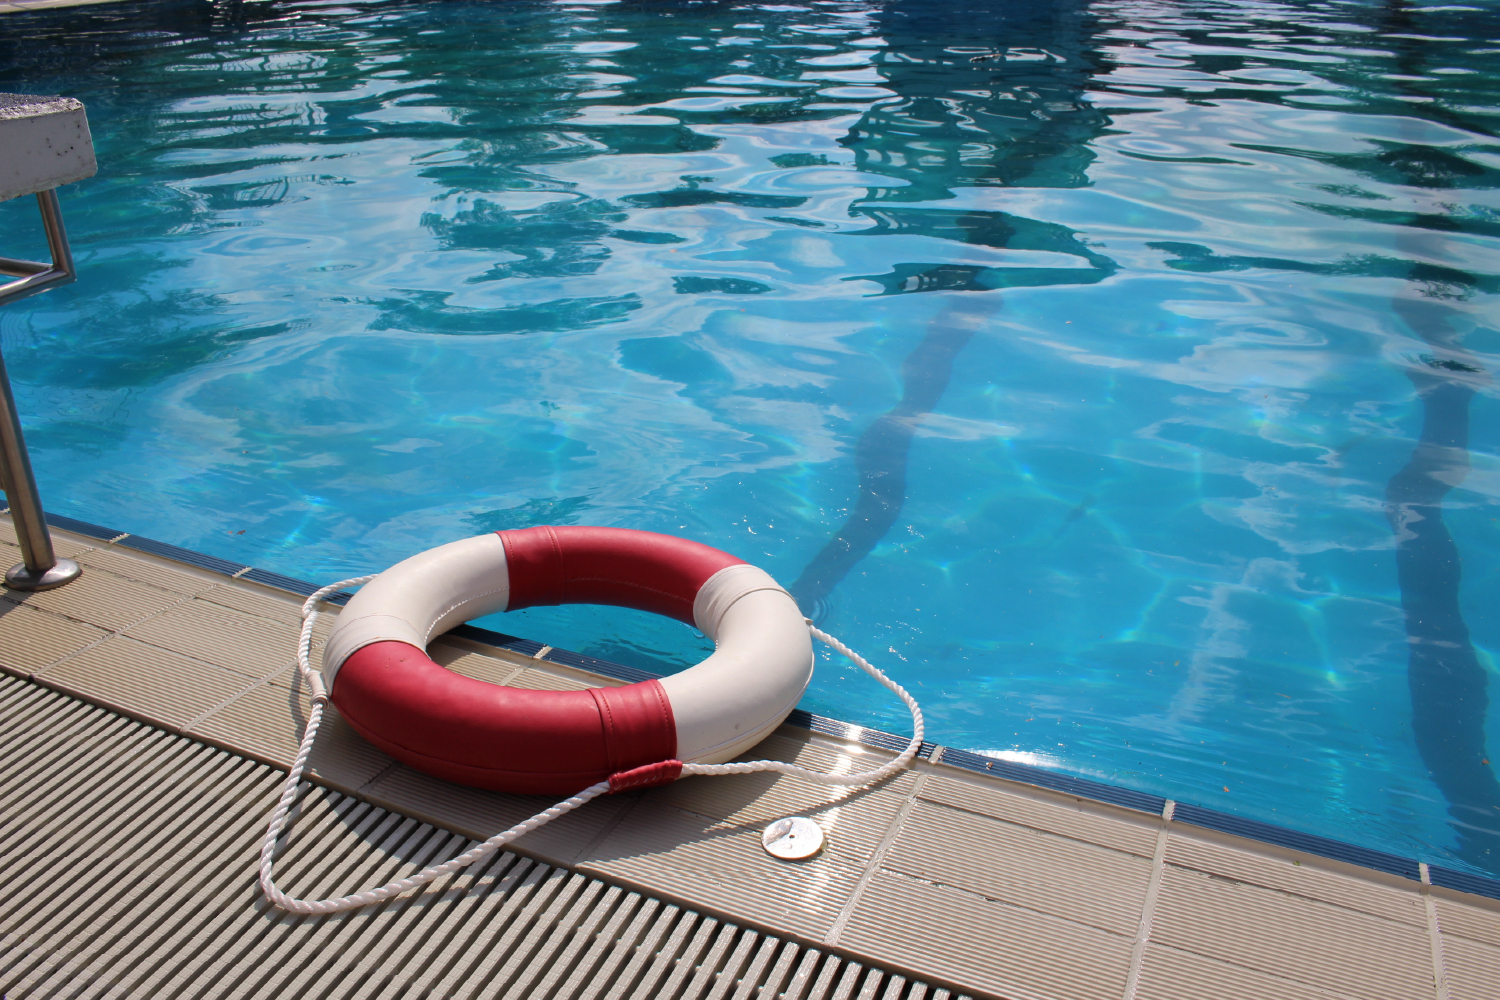 الحاجة إلى منقذي سباحة مؤهلين في حمامات السباحة في دولة الإمارات